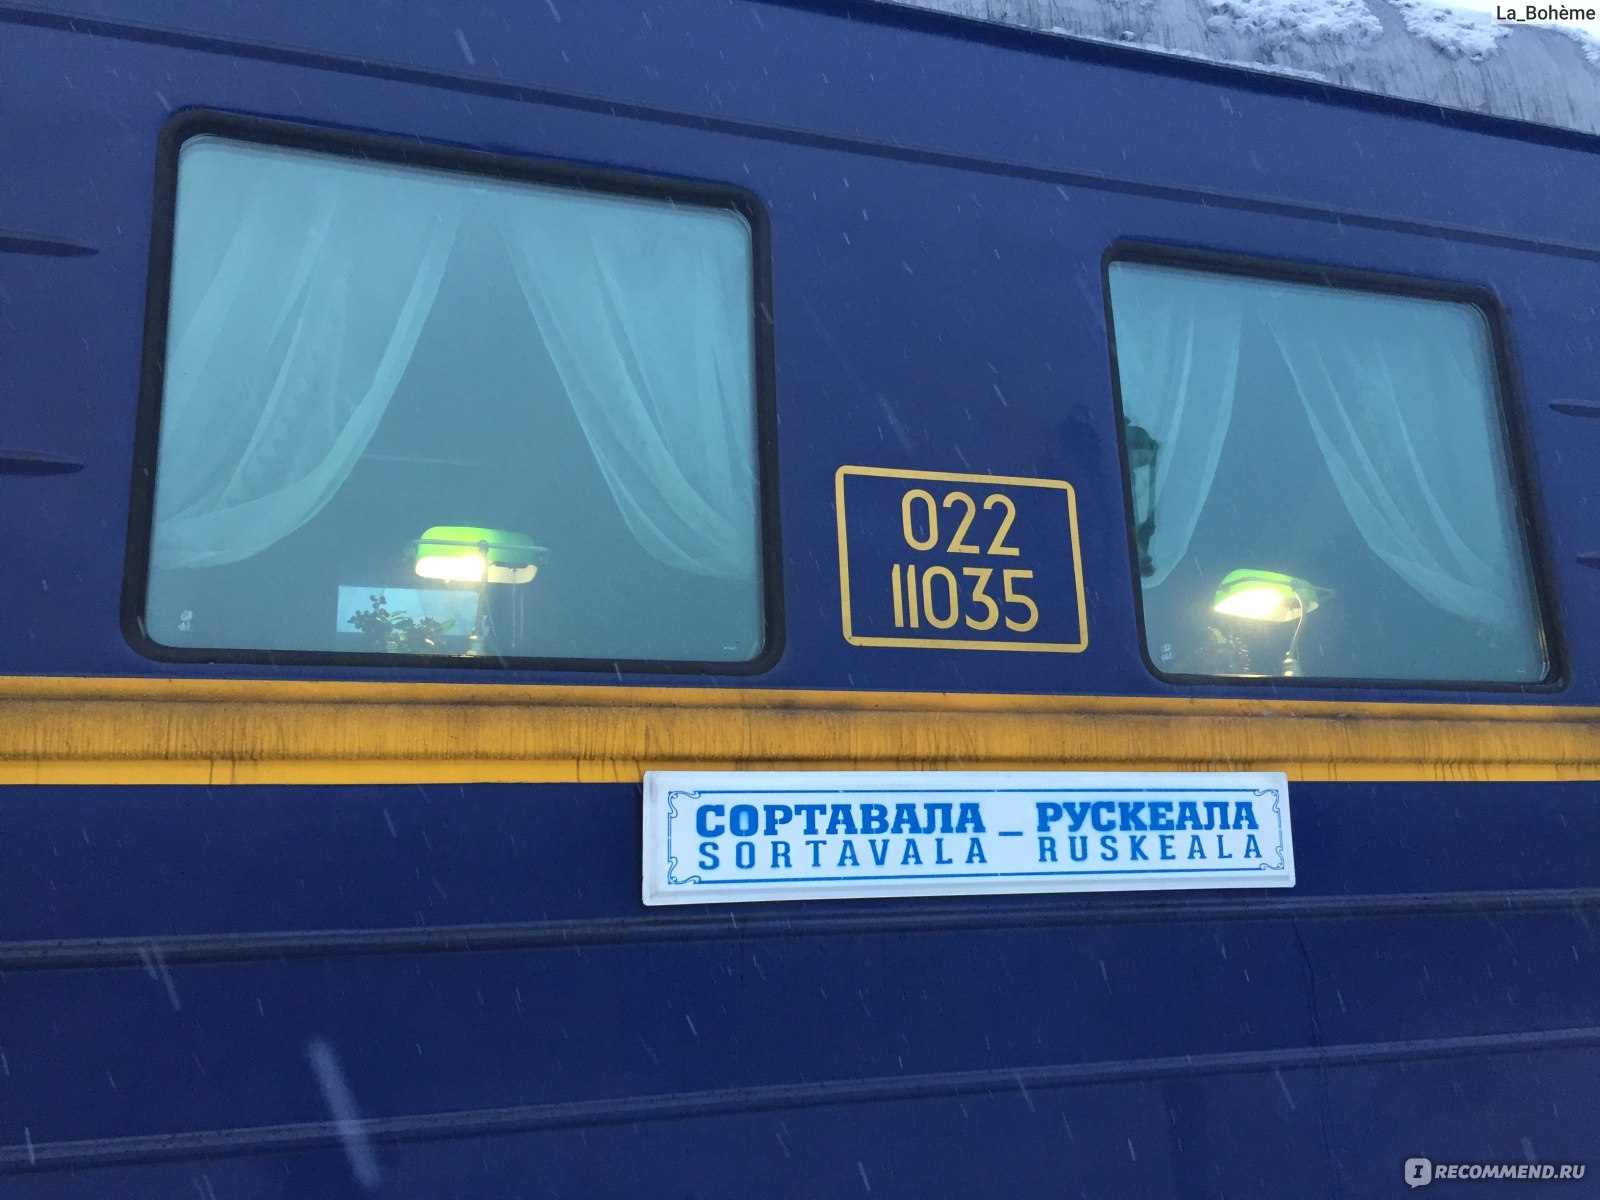 Билеты на поезд москва сортавала. Поезд 921ч. Карелия поезд. Сортавала поезд. Фирменный поезд Сортавала Рускеала.